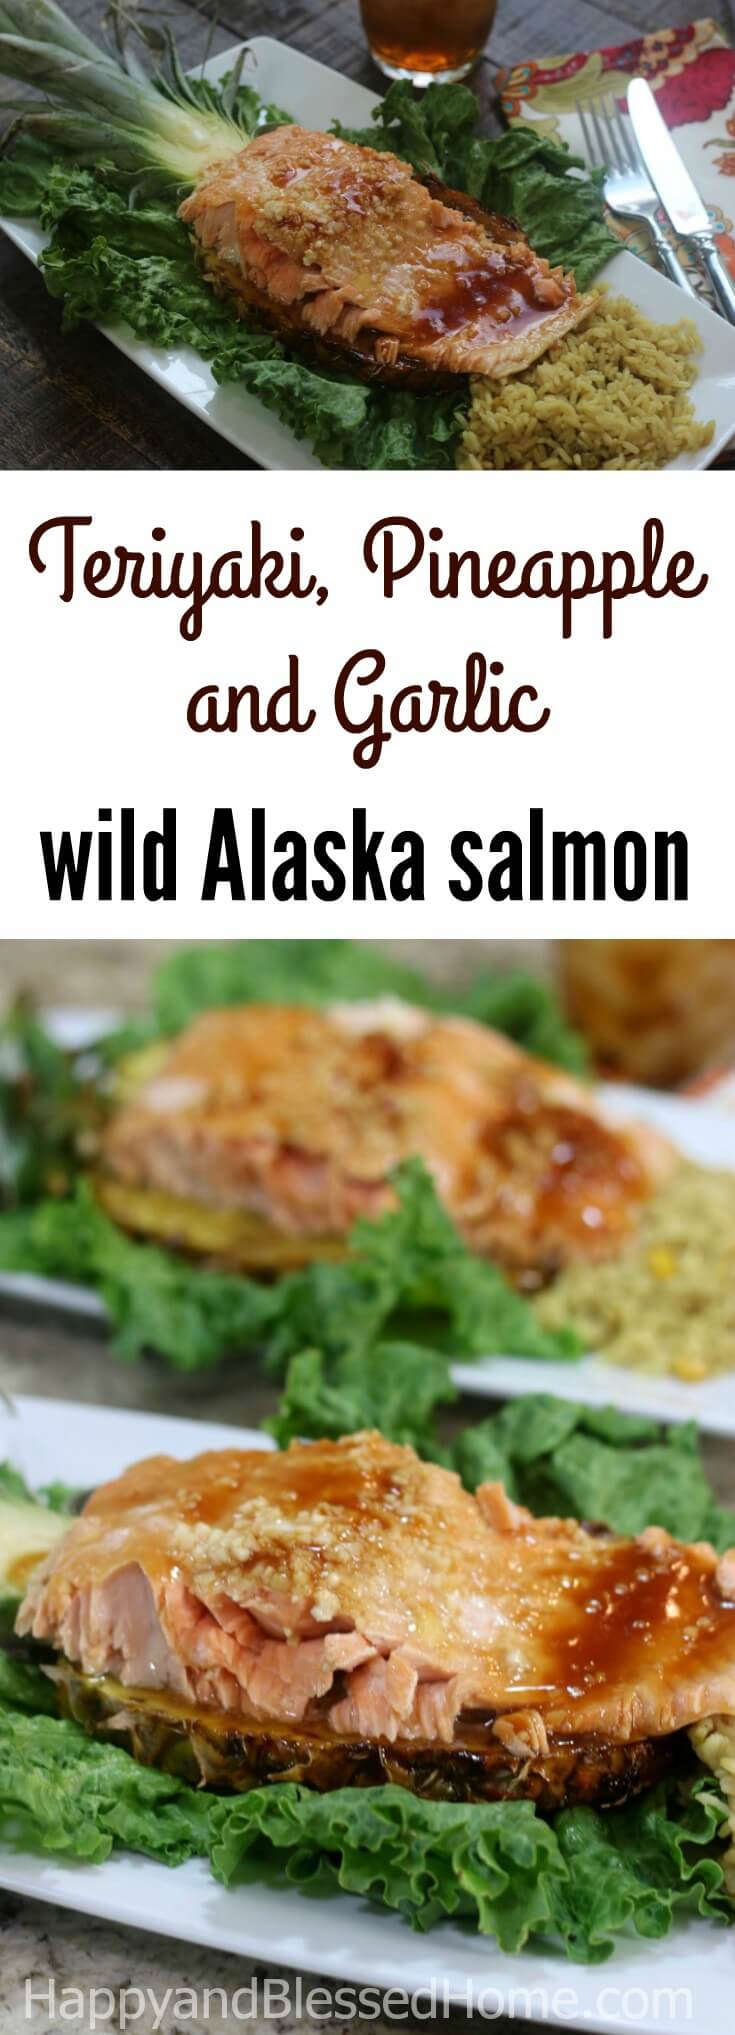 An easy recipe for fresh Alaska Seafood - Teriyaki, Pineapple and Garlic wild Alaska salmon